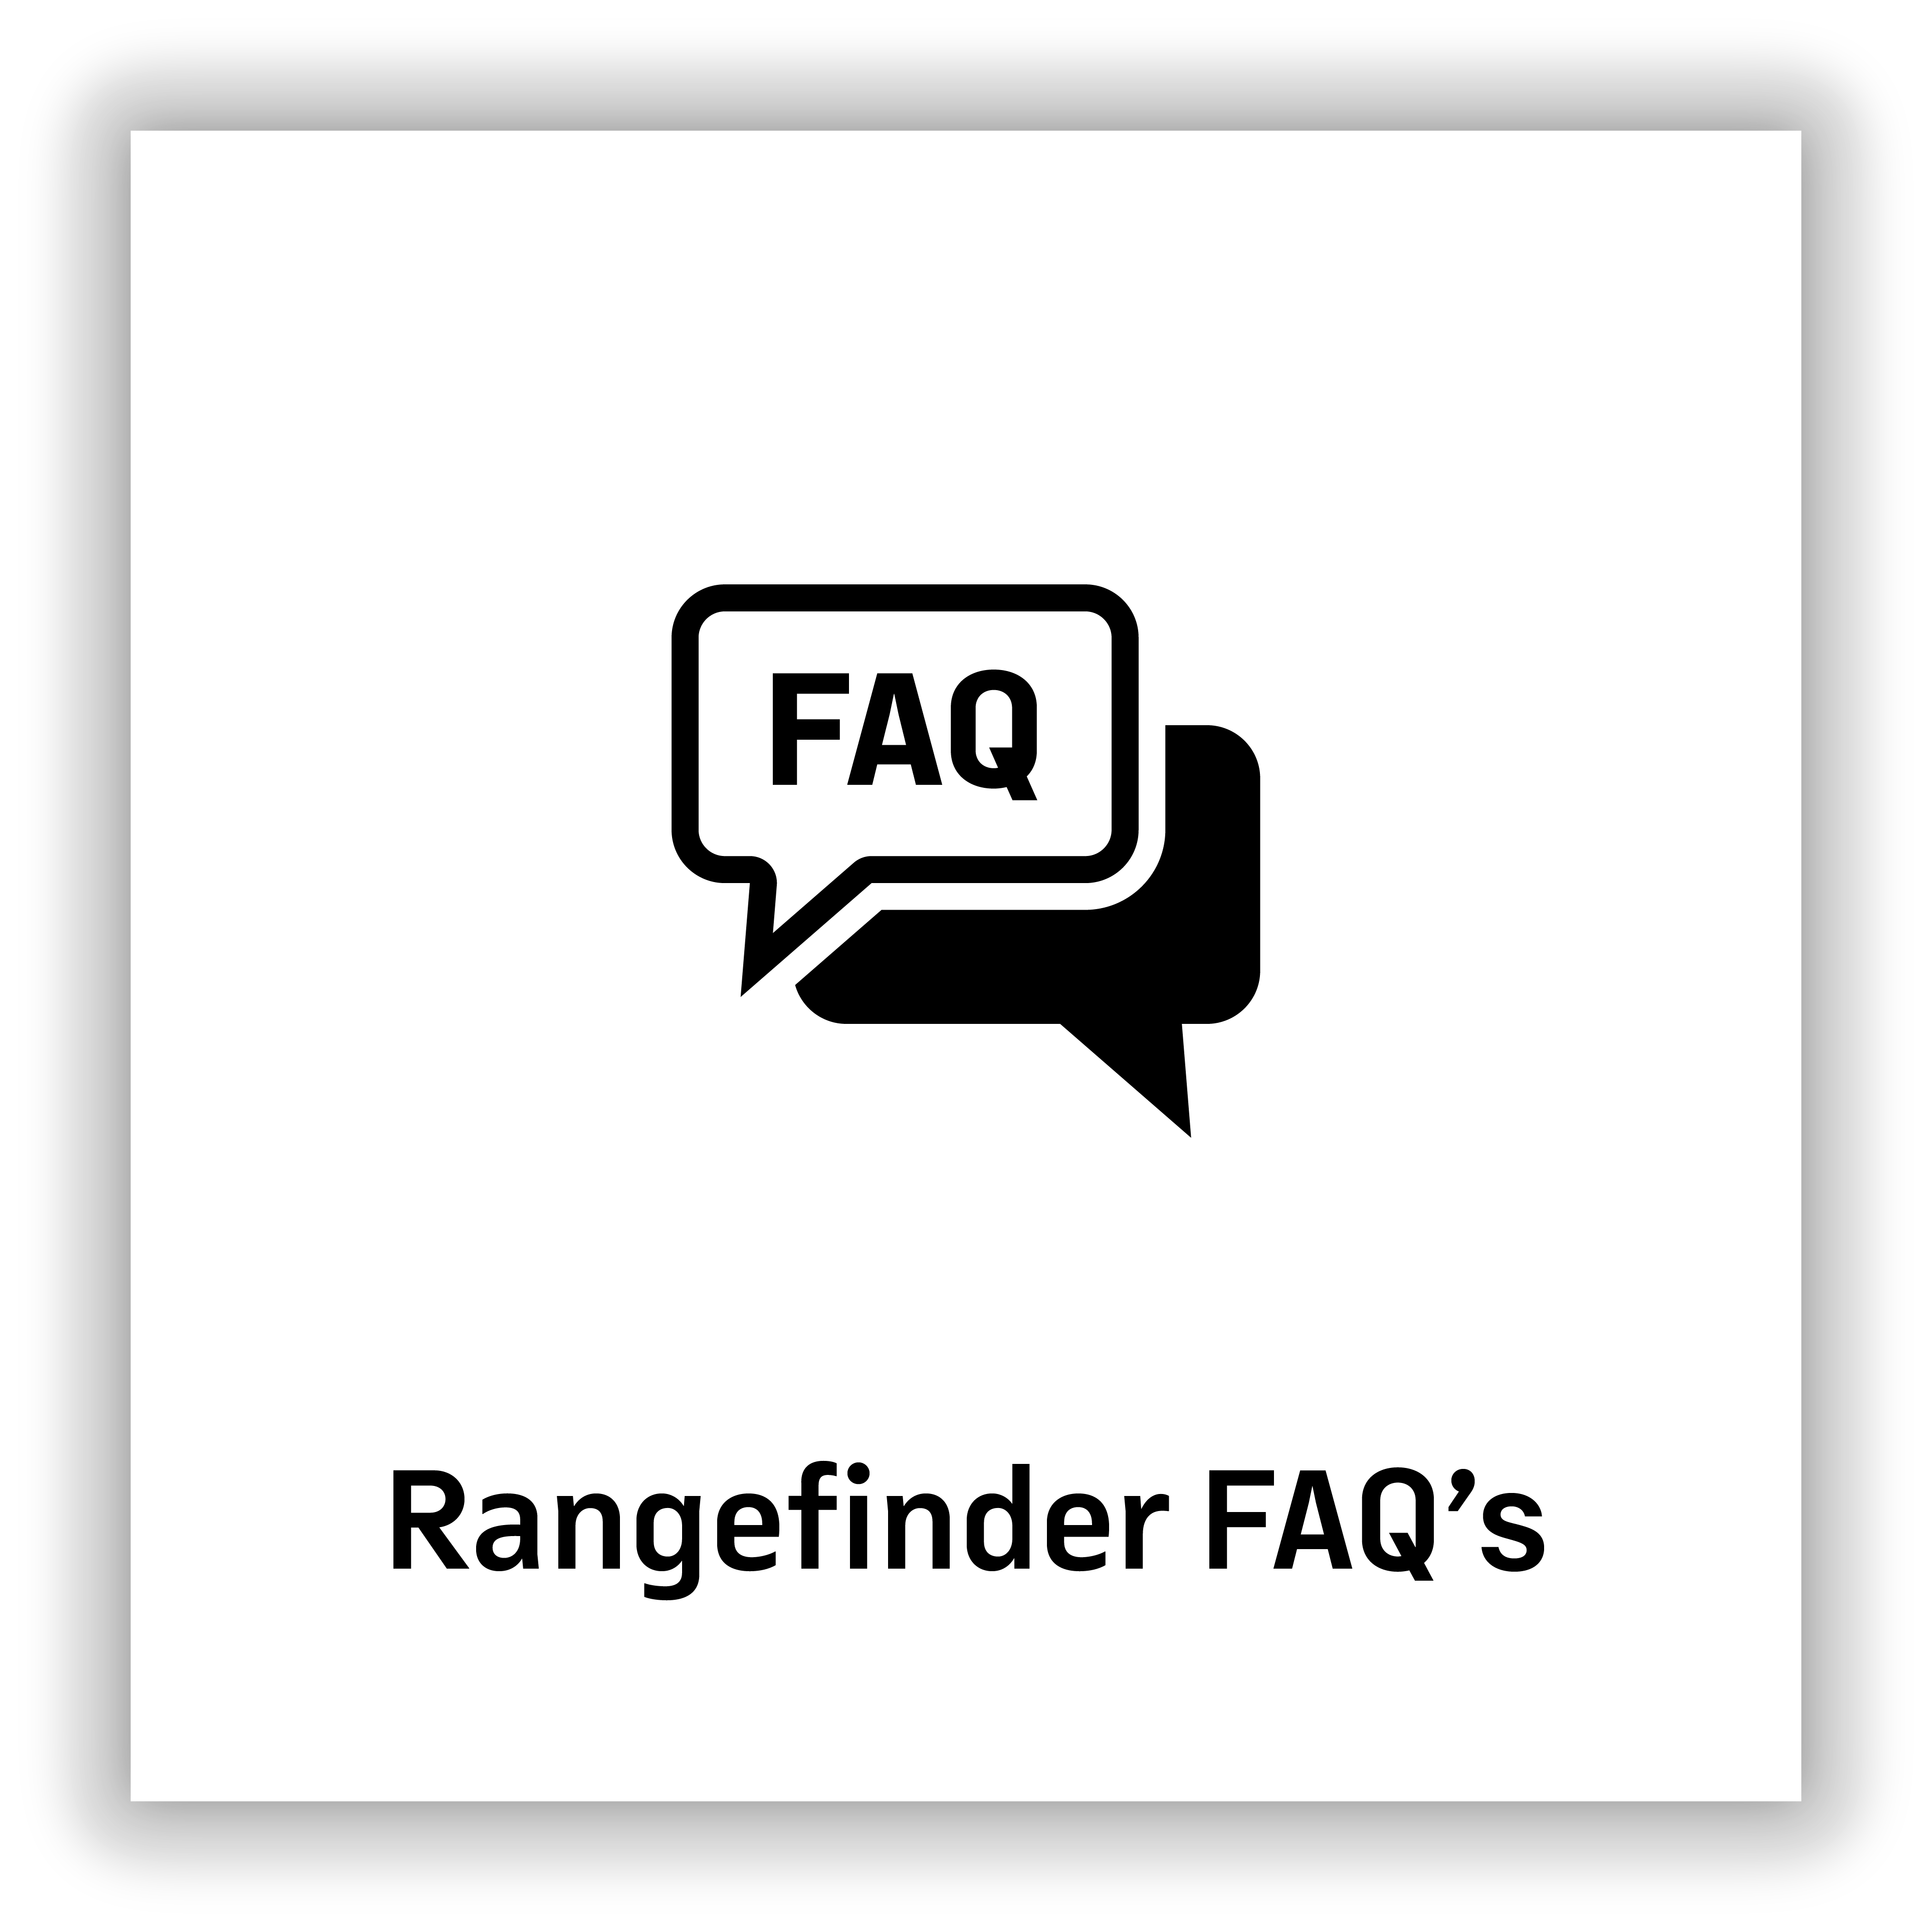 Rangefinder FAQs